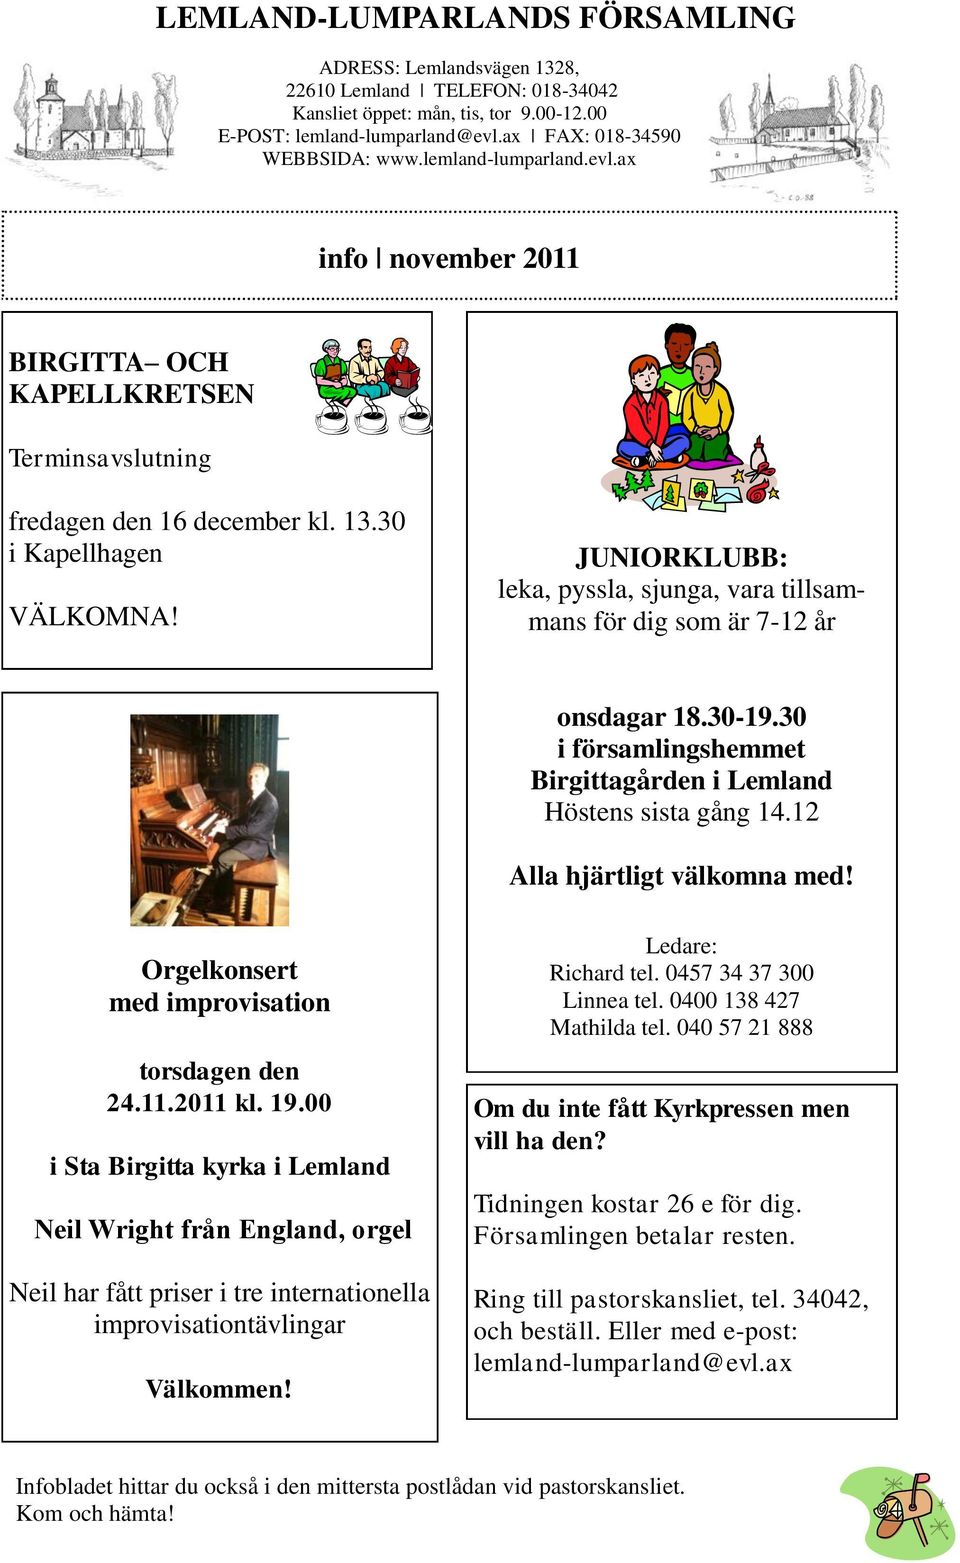 JUNIORKLUBB: leka, pyssla, sjunga, vara tillsammans för dig som är 7-12 år onsdagar 18.30-19.30 i församlingshemmet Birgittagården i Lemland Höstens sista gång 14.12 Alla hjärtligt välkomna med!